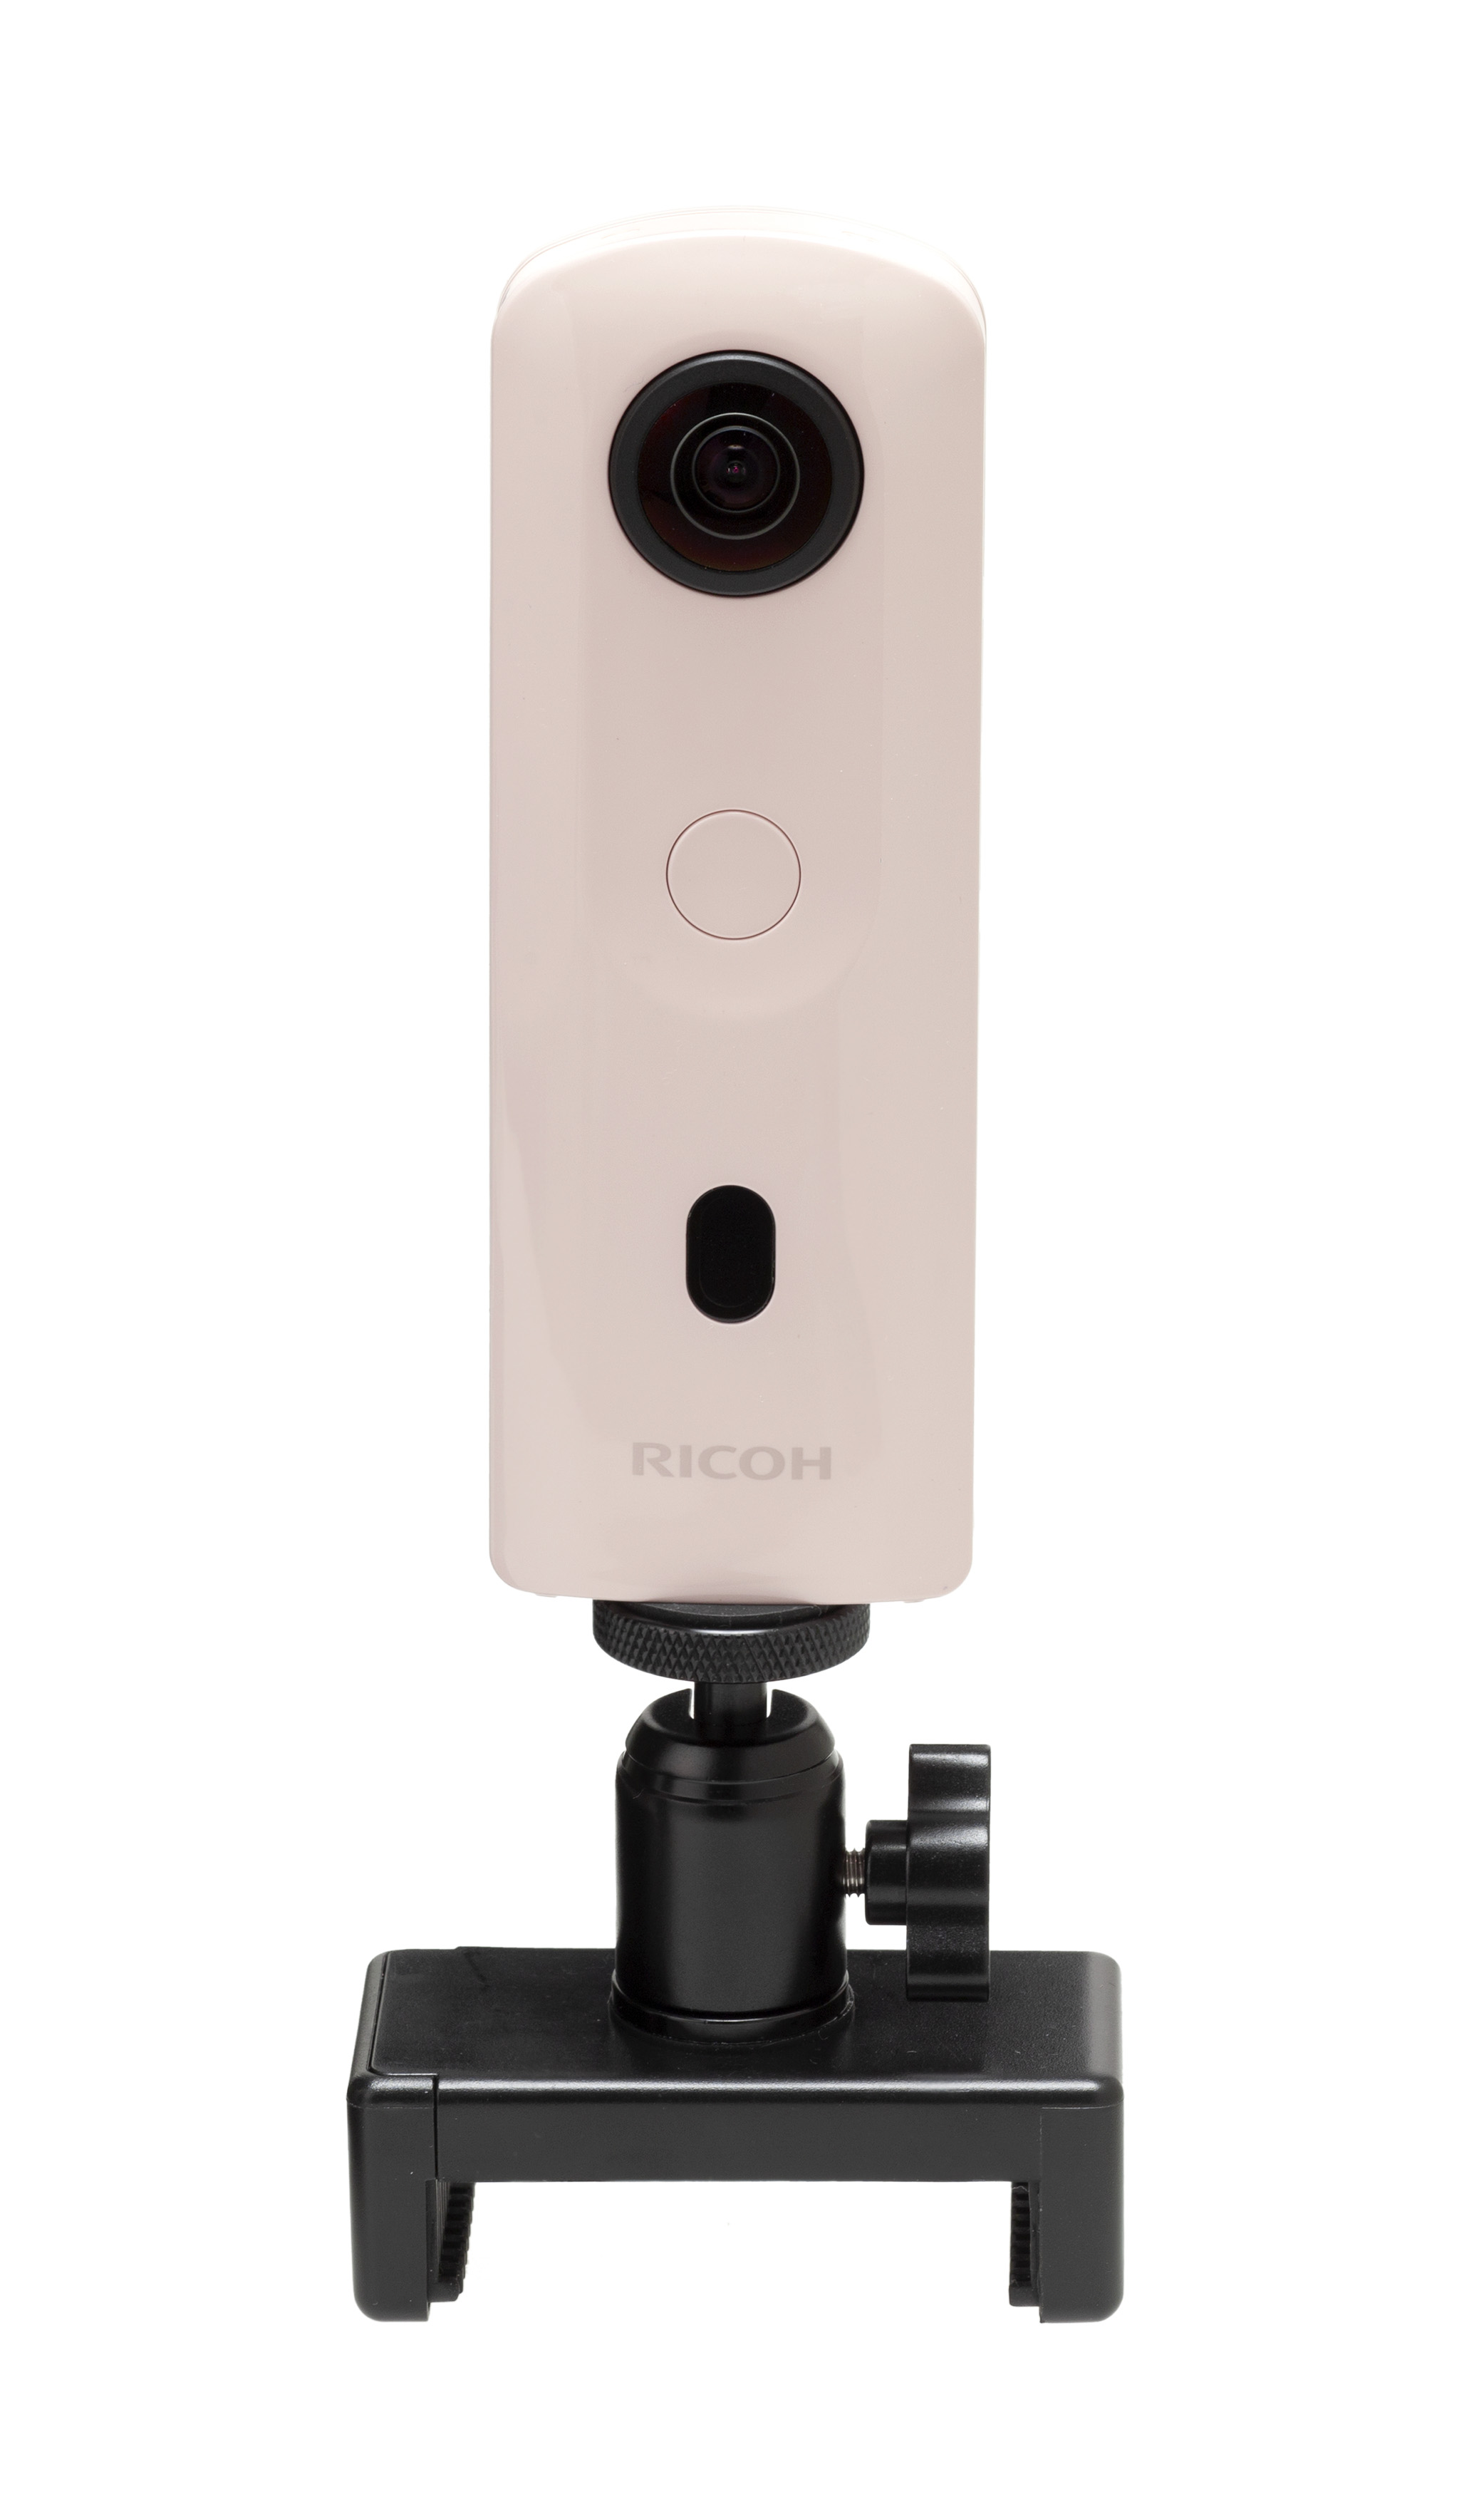 现在可用RICOH THETA 和智能手机照相机同时拍摄– 同时发布包括智能手机